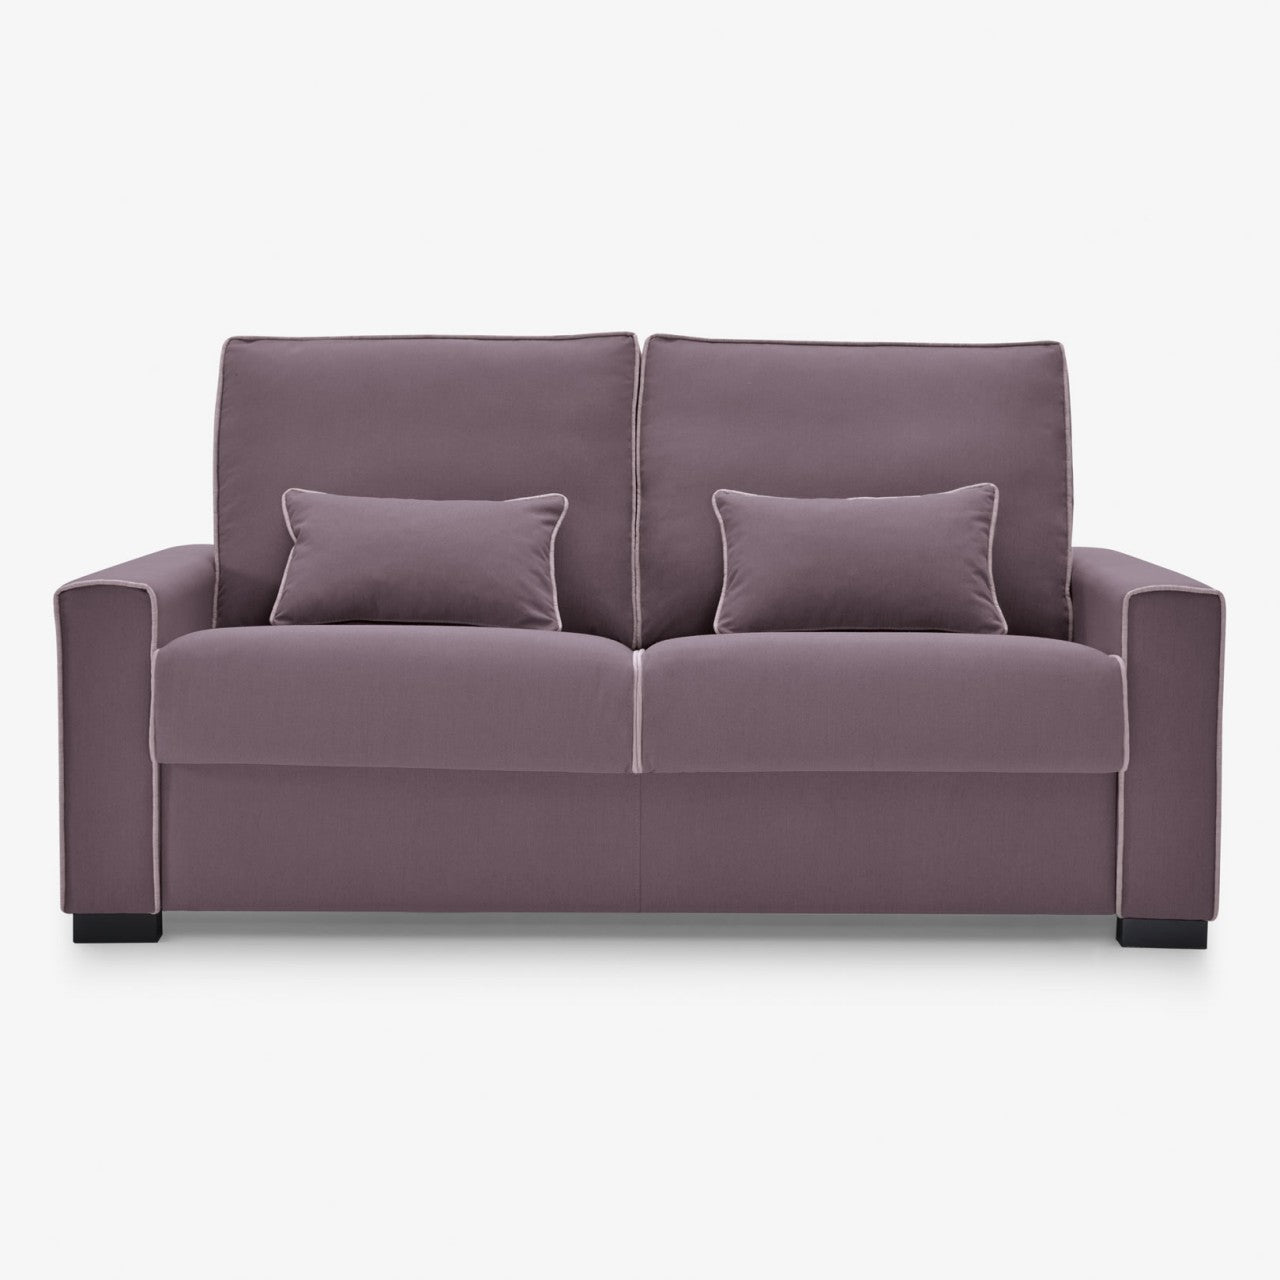 Sofá modular pequeño (2 plazas) de color gris más puf - Modules - Don  Baraton: tienda de sofás, colchones y muebles